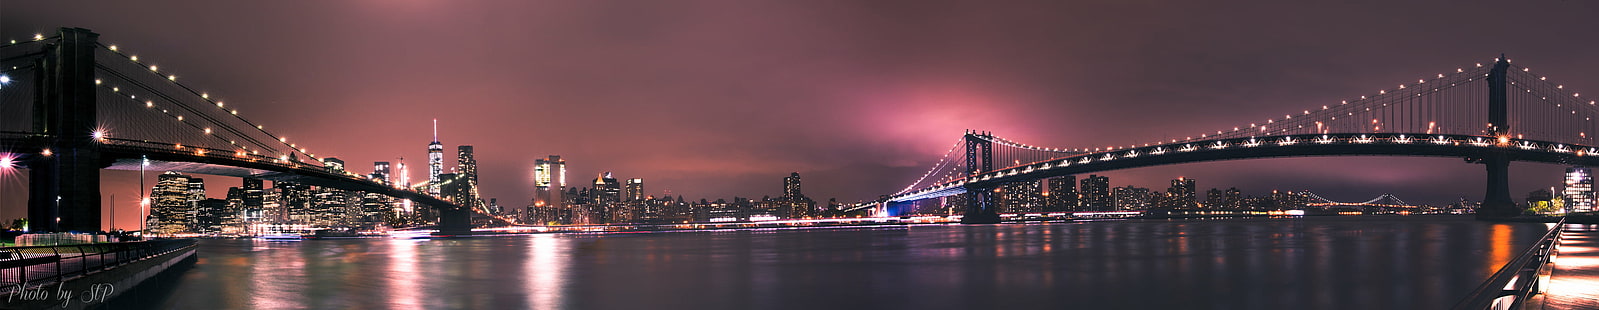 ภาพถ่ายพาโนรามาของเมืองในเวลากลางคืน york นิวยอร์กนิวยอร์กสะพานภาพถ่ายพาโนรามาเมืองตอนกลางคืนสะพานบรูคลินสะพานแมนฮัตตัน Pentax K-3 การเปิดรับแสงเป็นเวลานาน nuit พาโนรามาปองต์น้ำฮัดสันแม่น้ำตะวันออก , แสงแม่น้ำ, ซิกม่า, กลางคืน, ทิวทัศน์, เมืองนิวยอร์ก, สะพาน - โครงสร้างที่มนุษย์สร้างขึ้น, เส้นขอบฟ้าในเมือง, uSA, สถานที่ที่มีชื่อเสียง, แมนฮัตตัน - เมืองนิวยอร์ก, แม่น้ำ, สถาปัตยกรรม, บรูคลิน - นิวยอร์ก, ฉากในเมือง, สว่างไสว, พลบค่ำ, อำเภอเมือง, วอลล์เปเปอร์ HD HD wallpaper